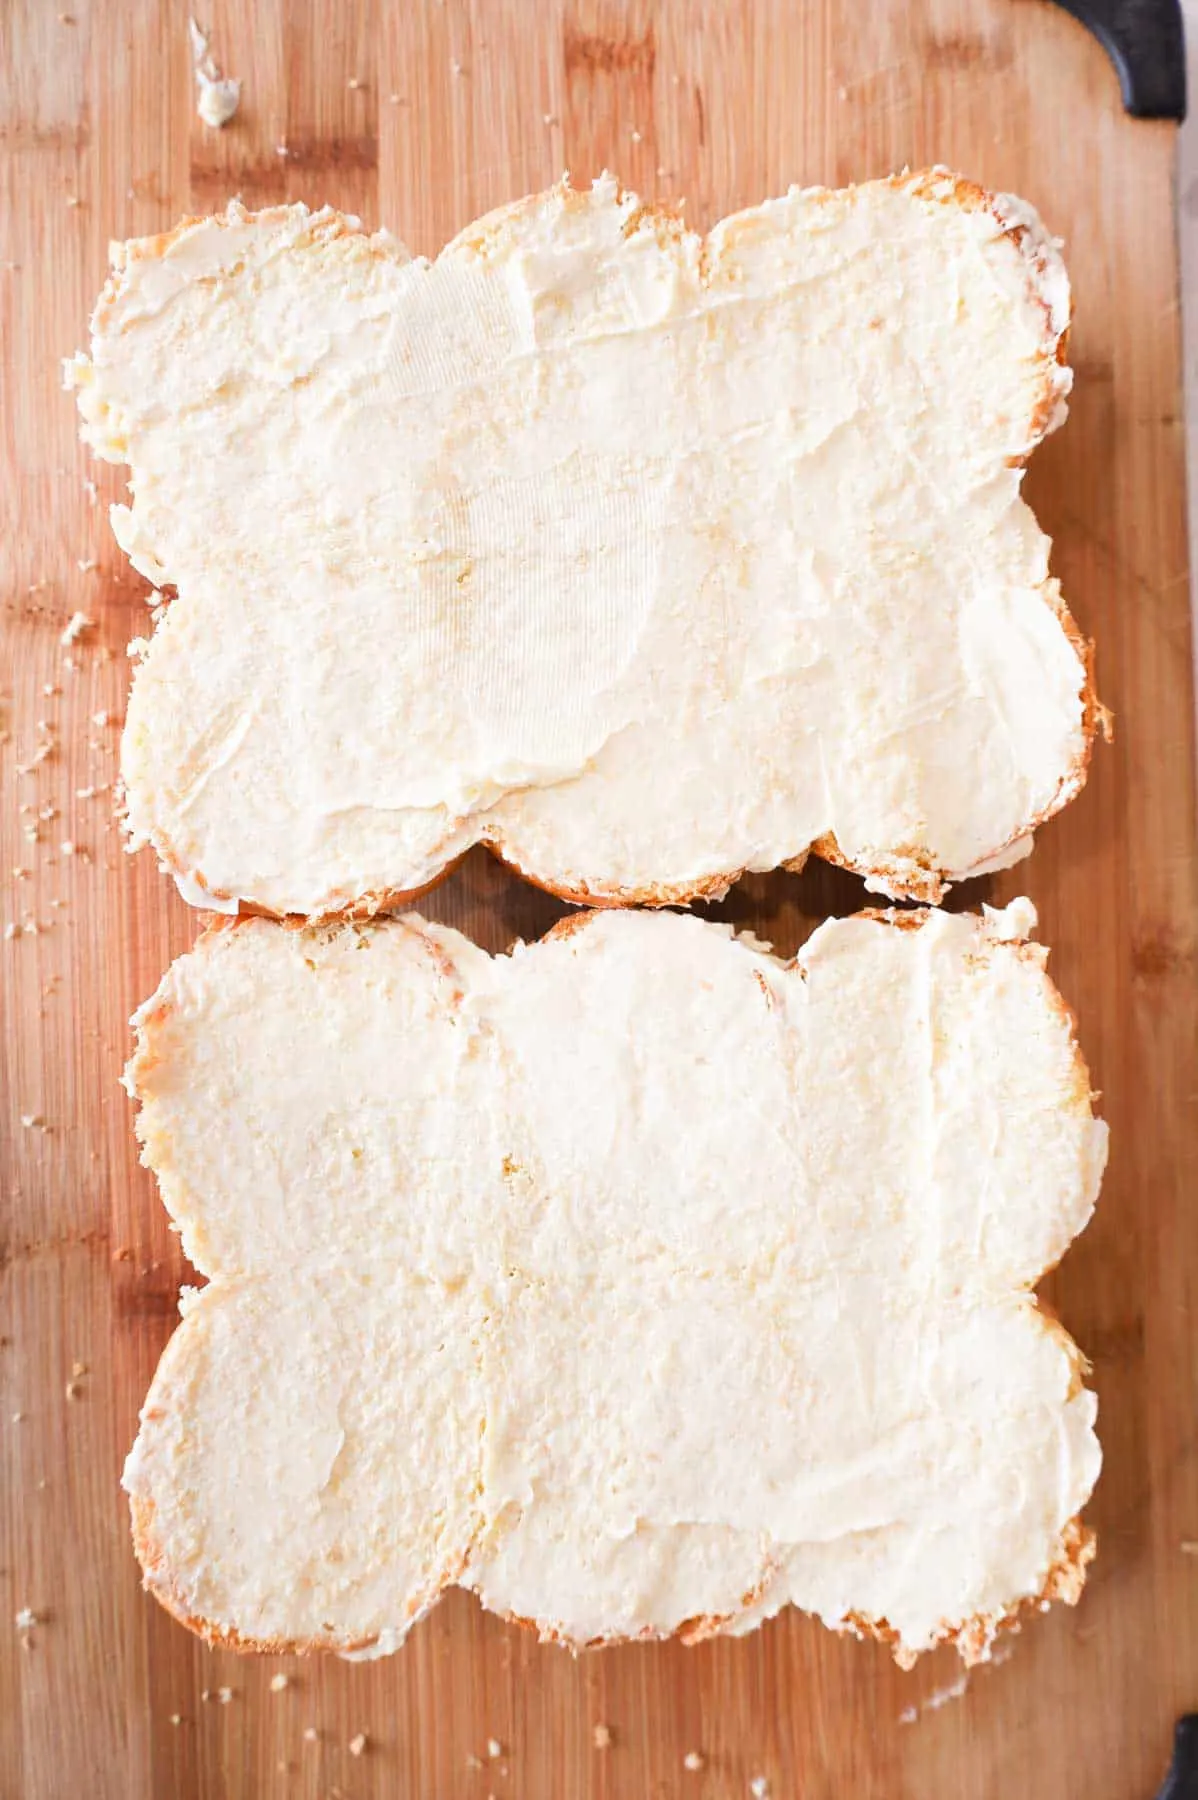 margarine spread on cut dinner rolls